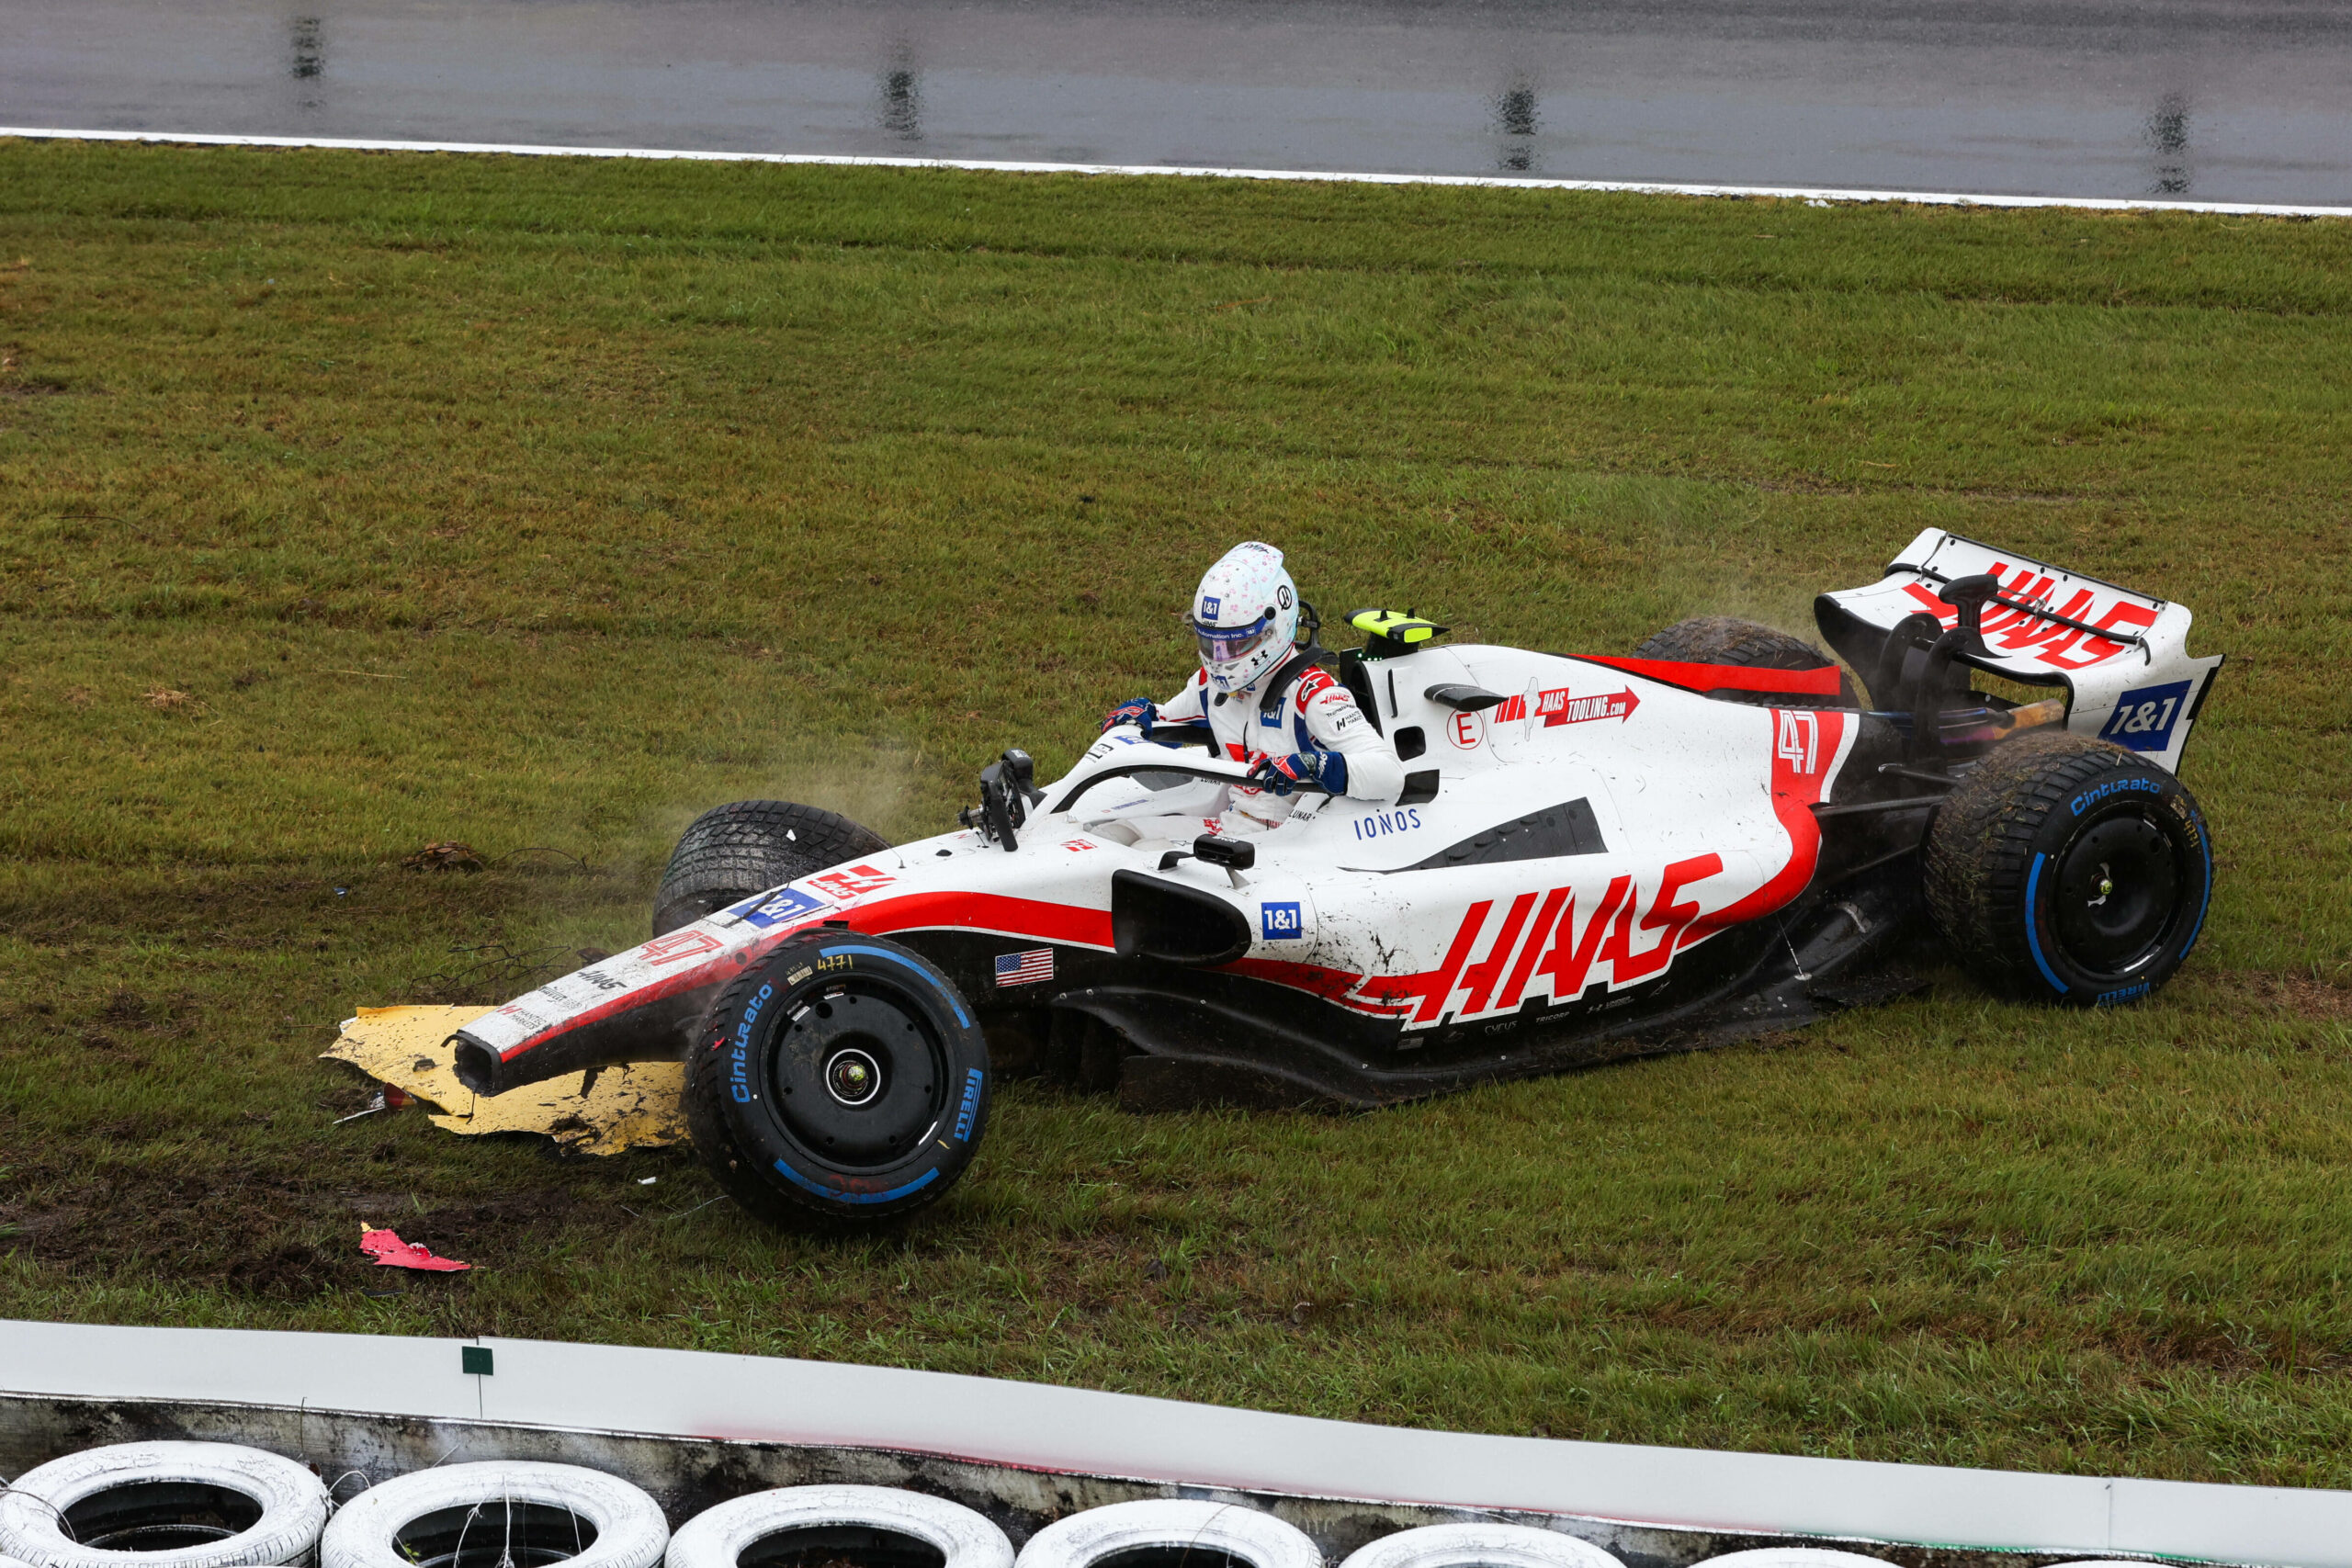 F1-Pilot Mick Schumacher steigt aus seinem beschädigten Boliden.